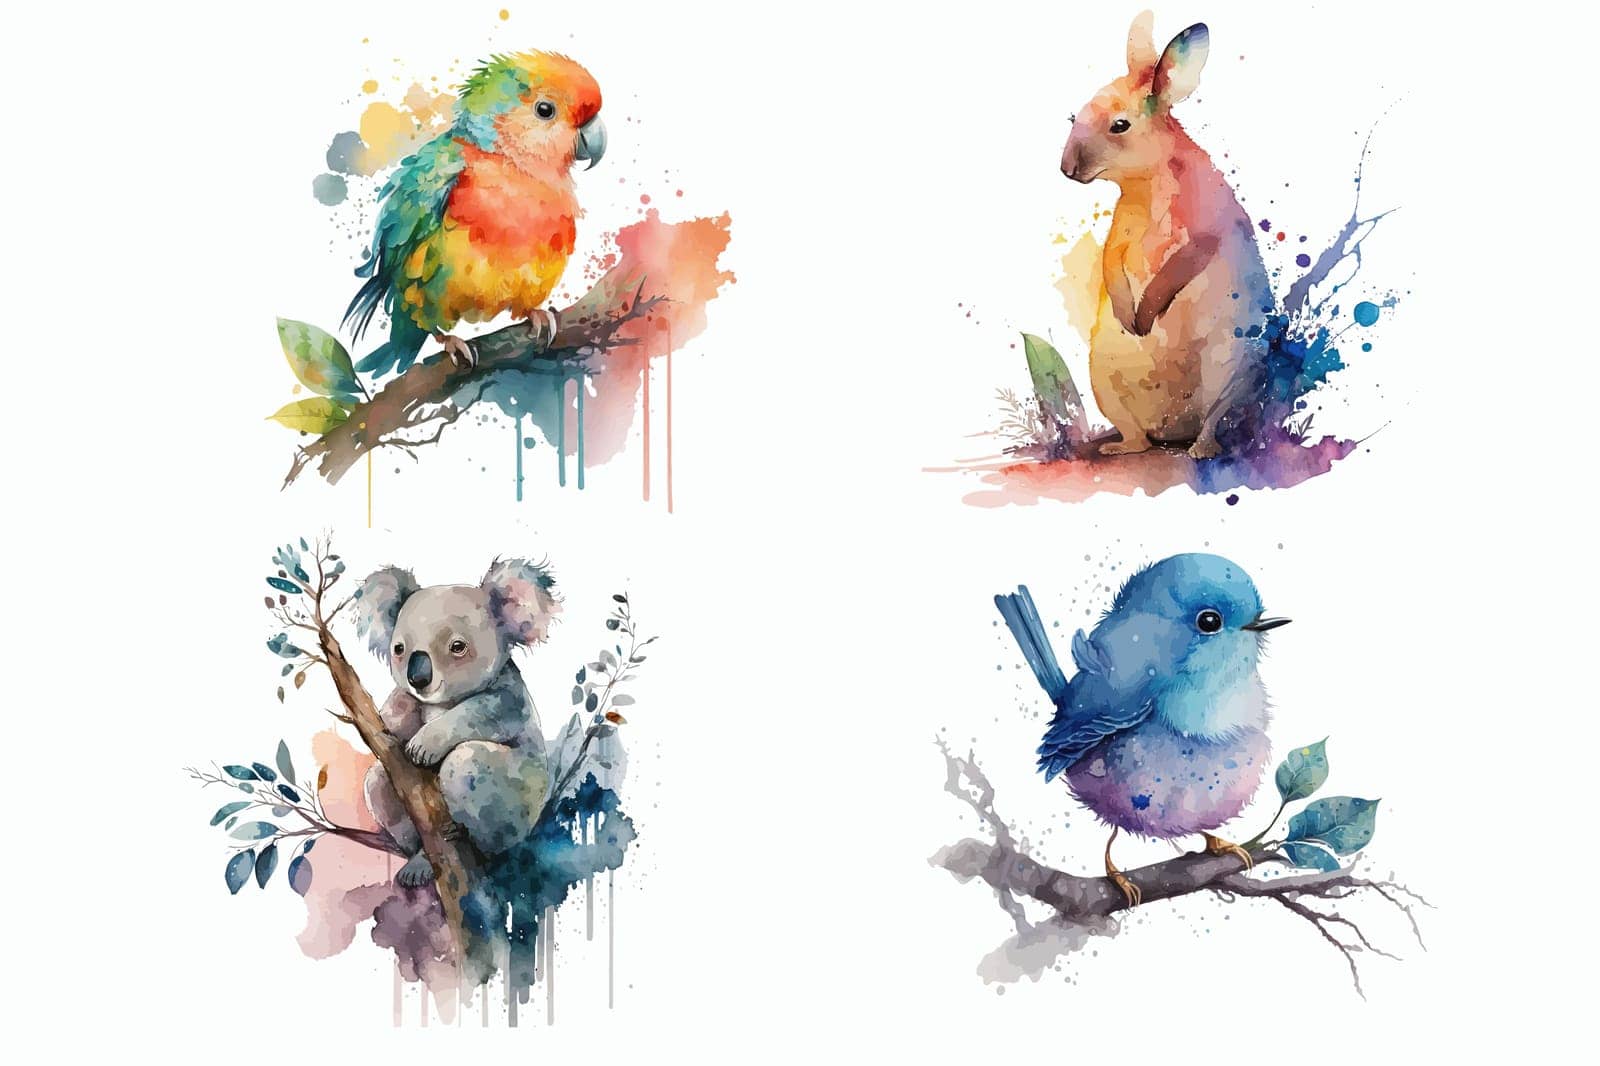 Koala, kangaroo, little bird, parrot in watercolor style. Isolated vector illustration by Andrei_01